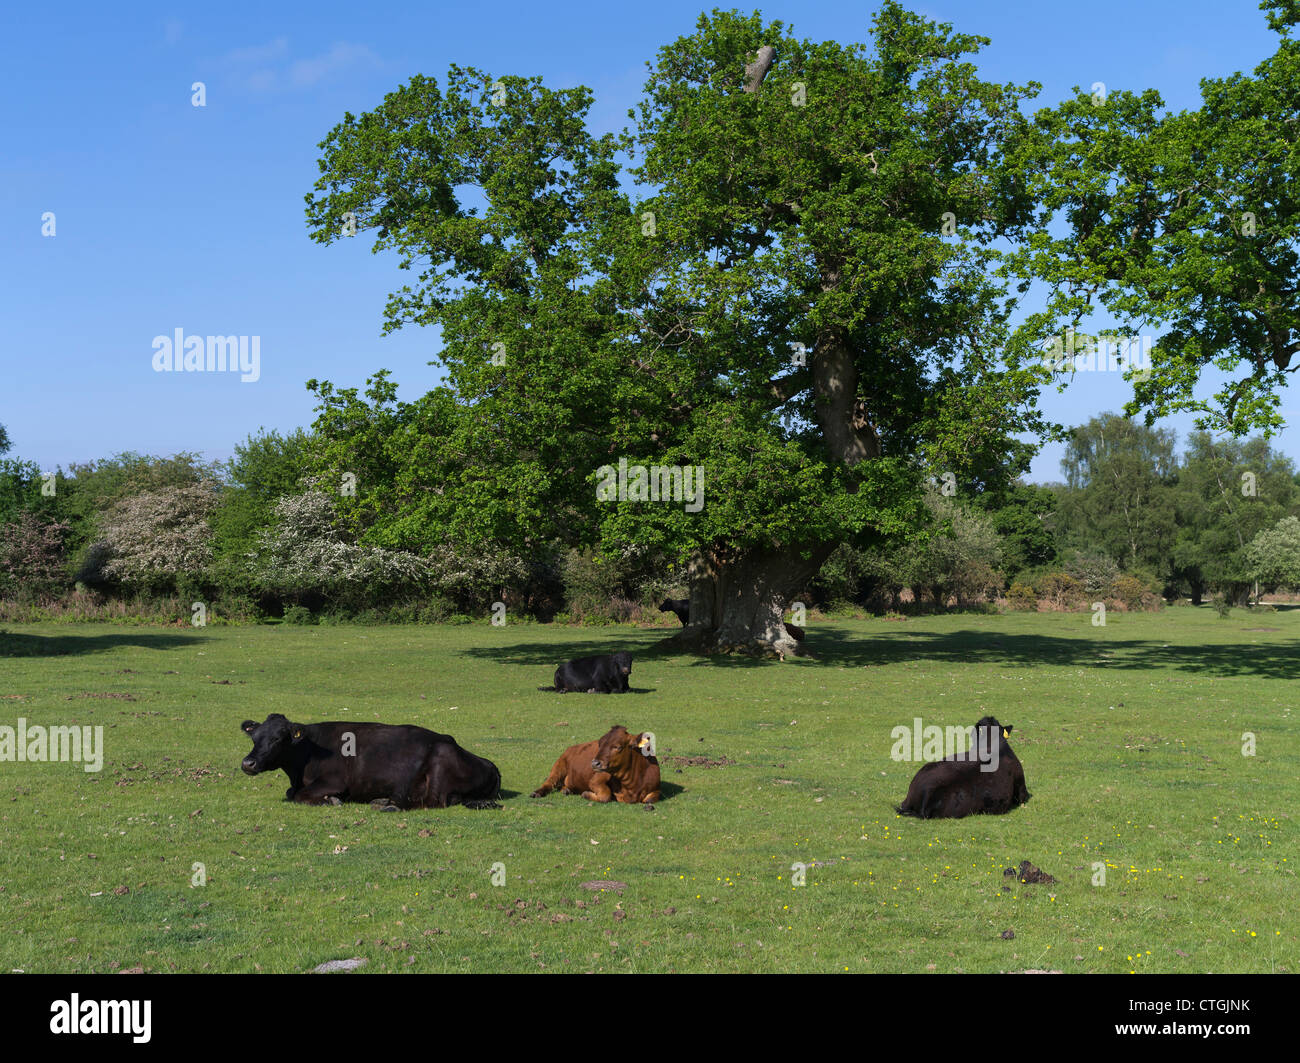 dh Dorf gemeinsamen Land NEUEN WALD HAMPSHIRE Kuh Rinder auf england Kühe Gras legen sich in Feld uk Felder Stockfoto